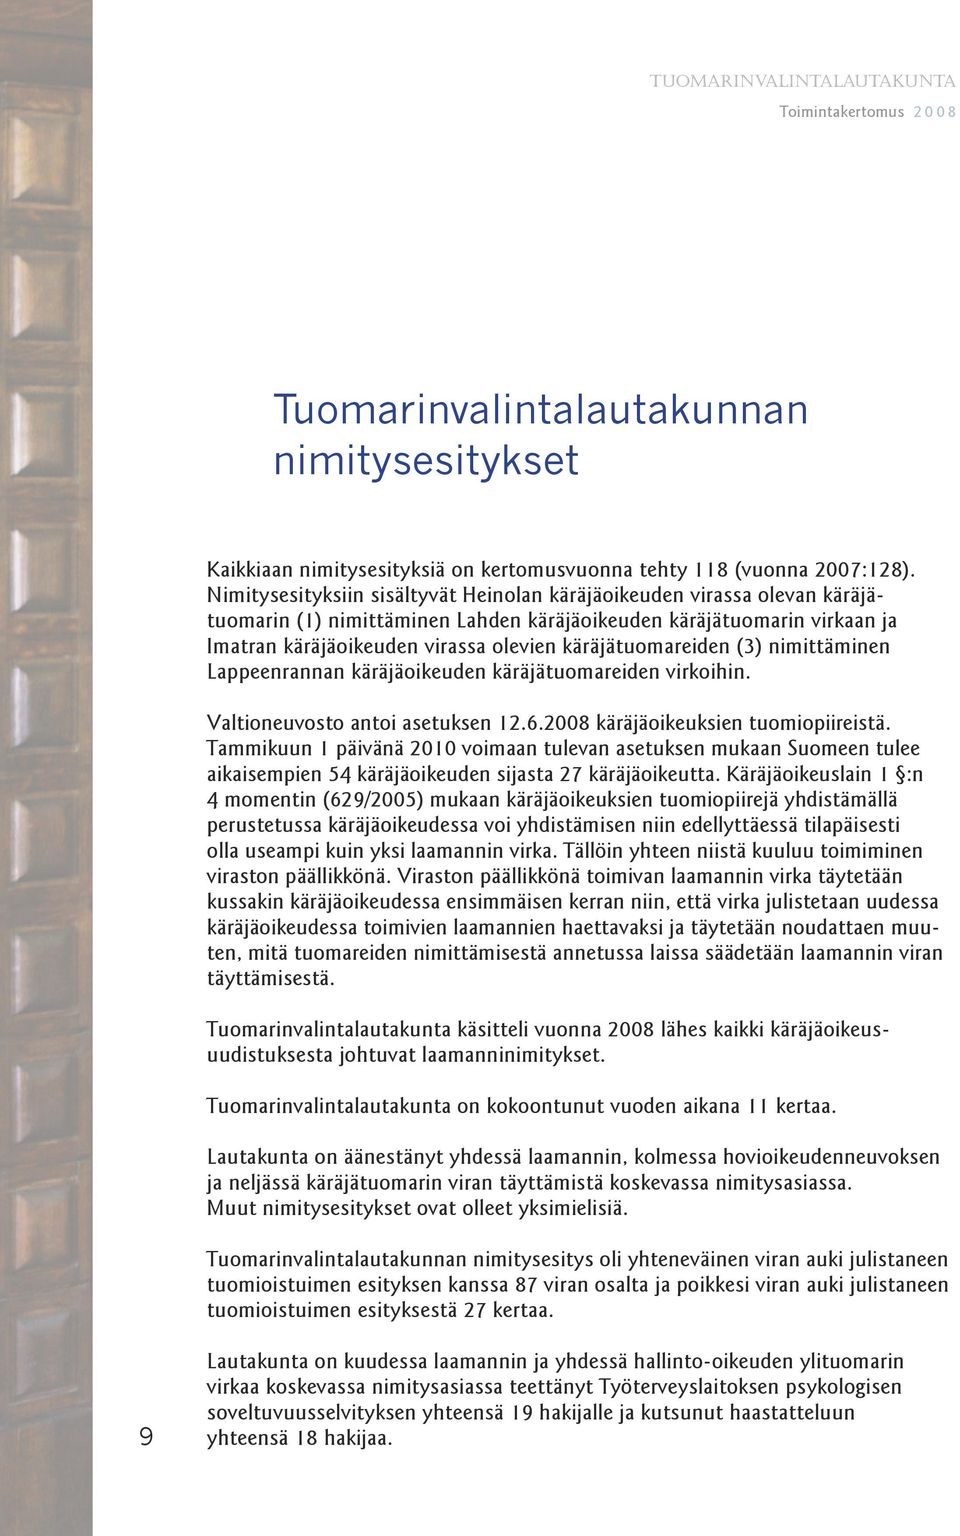 käräjätuomareiden (3) nimittäminen Lappeenrannan käräjäoikeuden käräjätuomareiden virkoihin. Valtioneuvosto antoi asetuksen 12.6.2008 käräjäoikeuksien tuomiopiireistä.